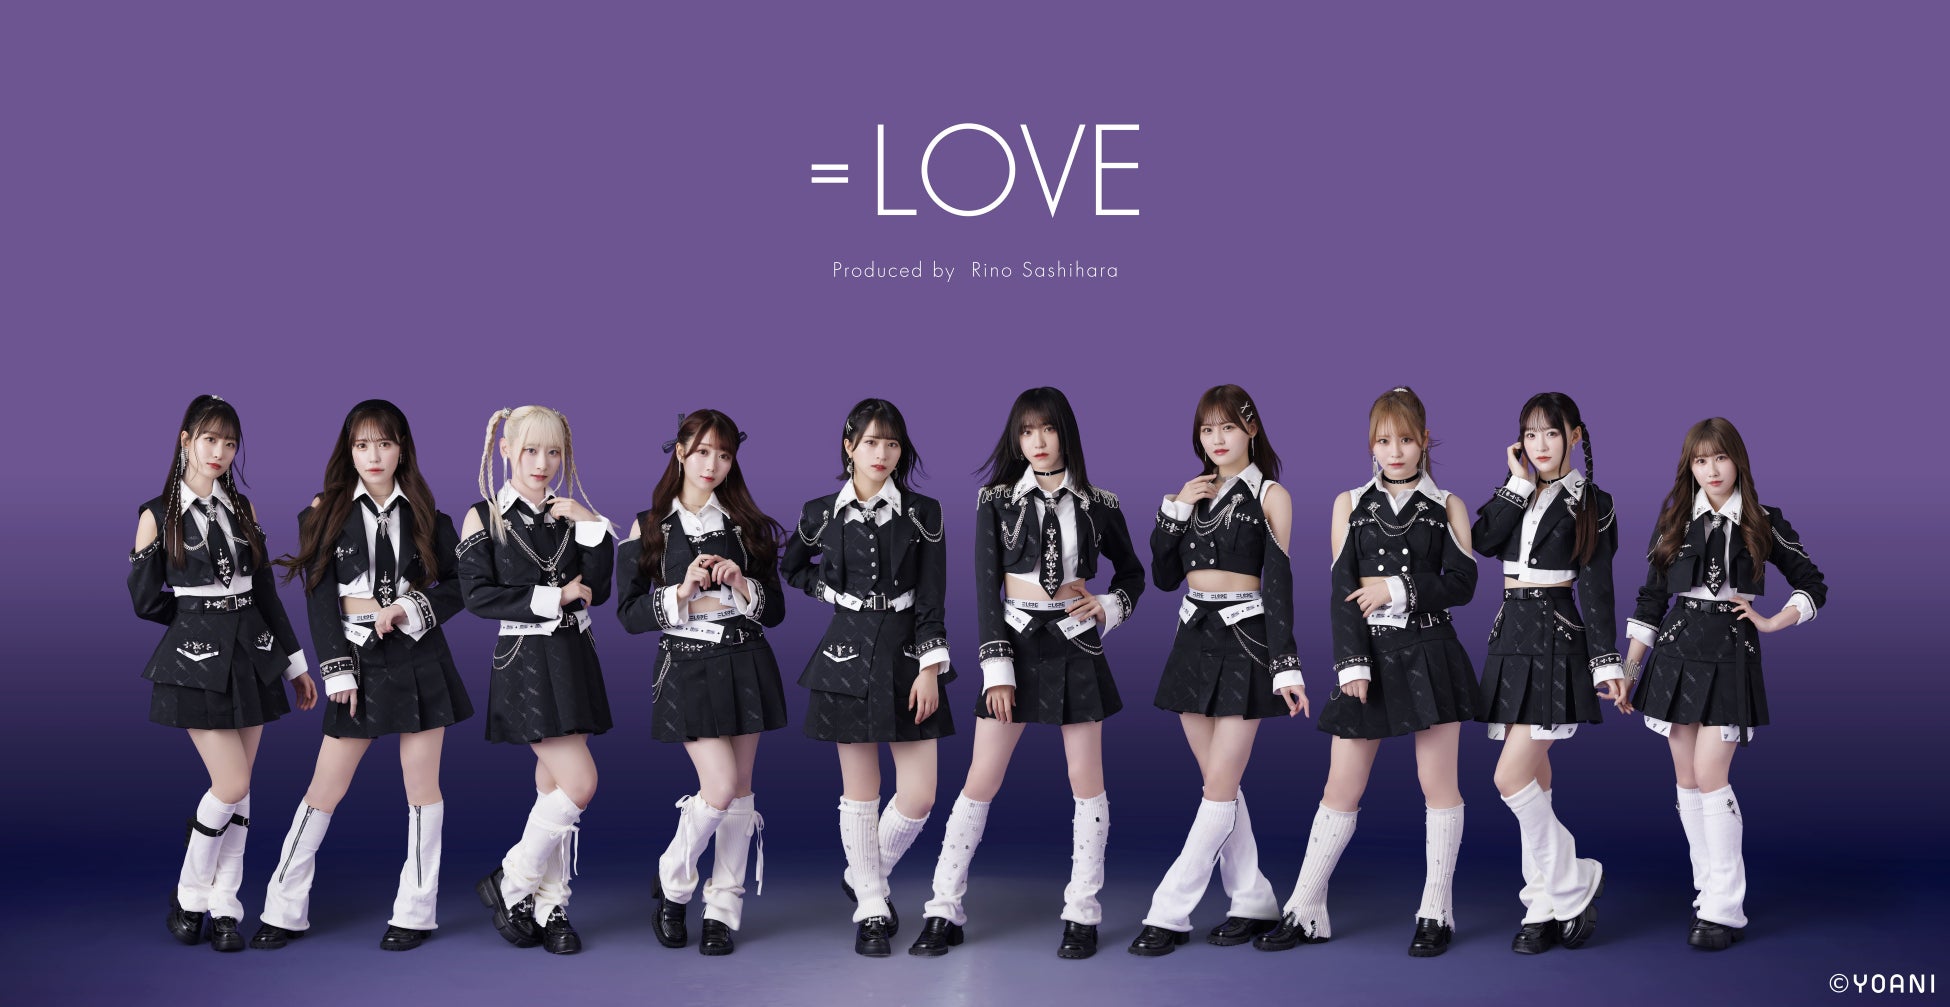 指原莉乃プロデュースによるアイドルグループ「=LOVE」「≠ME」。本日、２グループによる「イコノイ合同個別お話し会」をパシフィコ横浜で開催!!